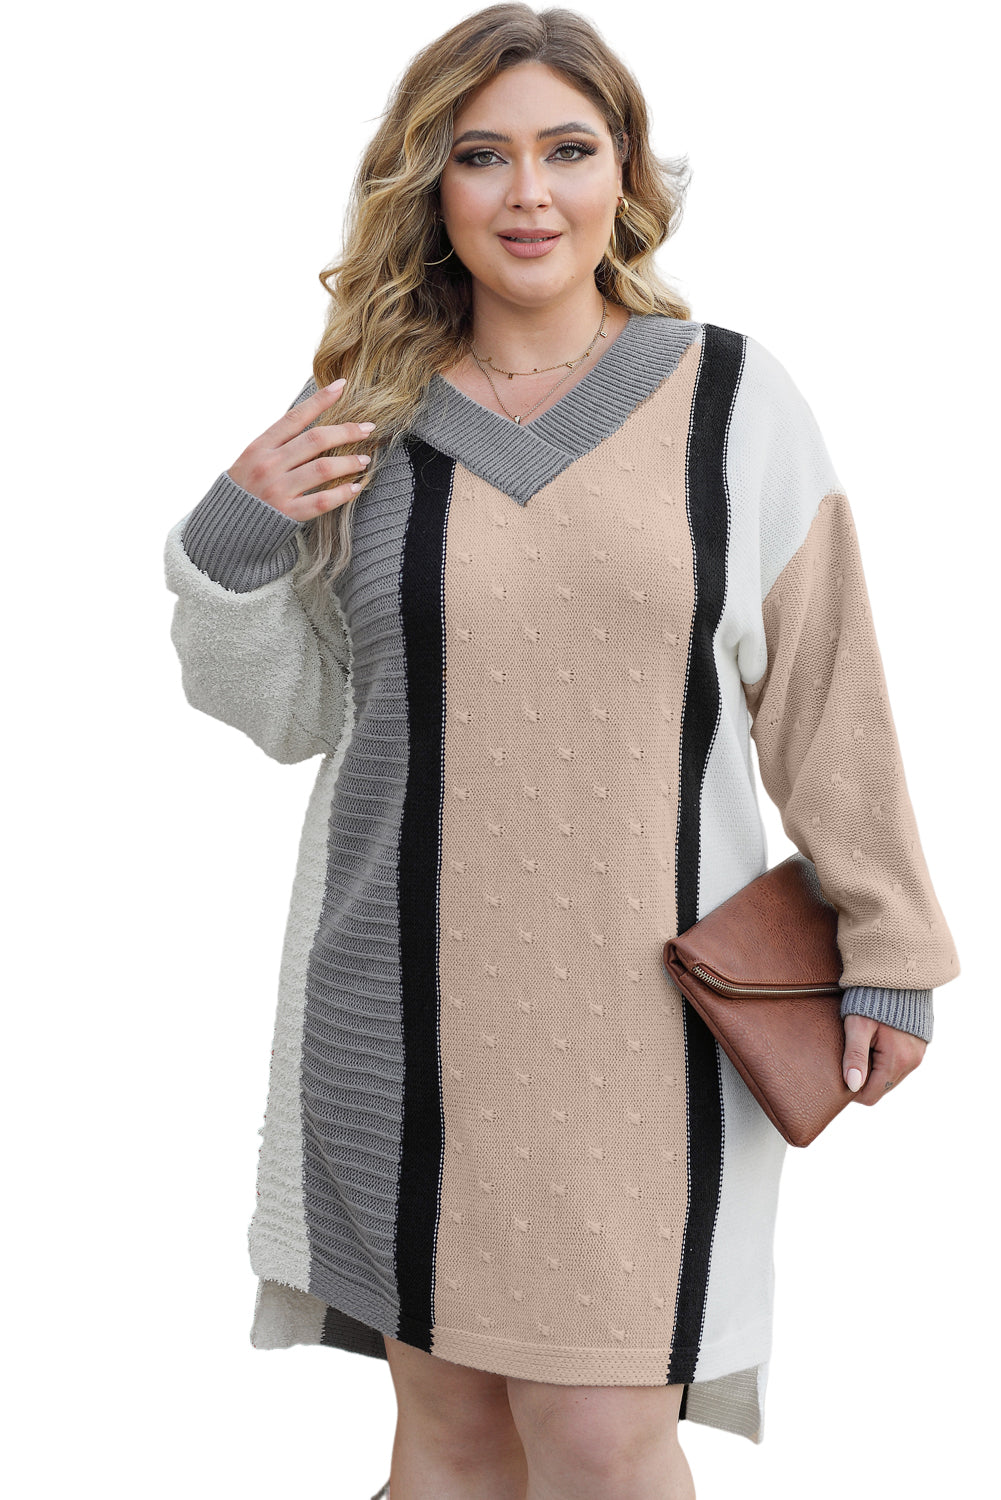 Pulover obleka velike velikosti marelice mešane barve Boucl